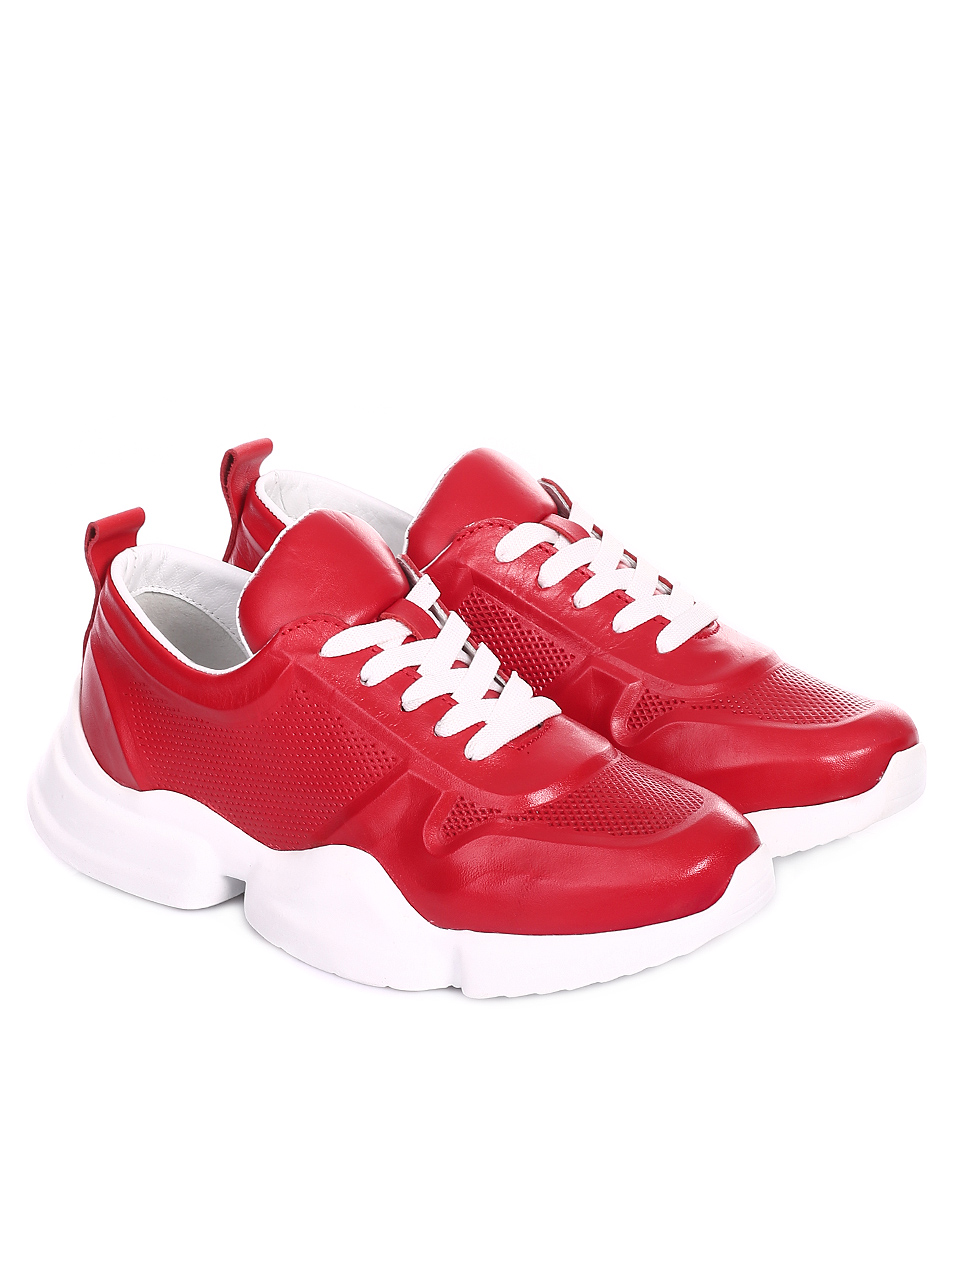 Ежедневни дамски обувки от естествена кожа 3AT-20473 red